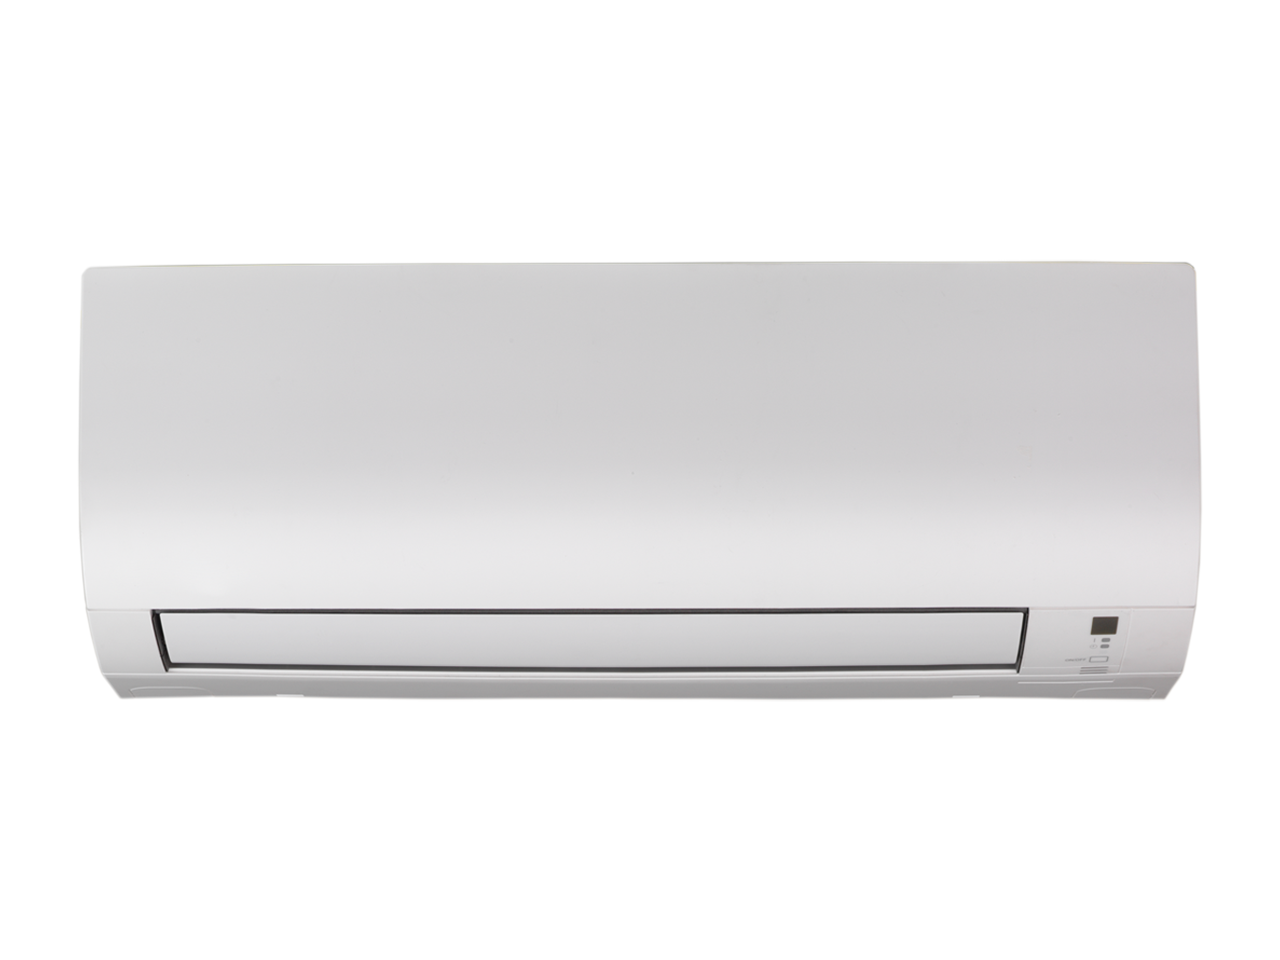 FTXP20L Inverter Air Conditioner